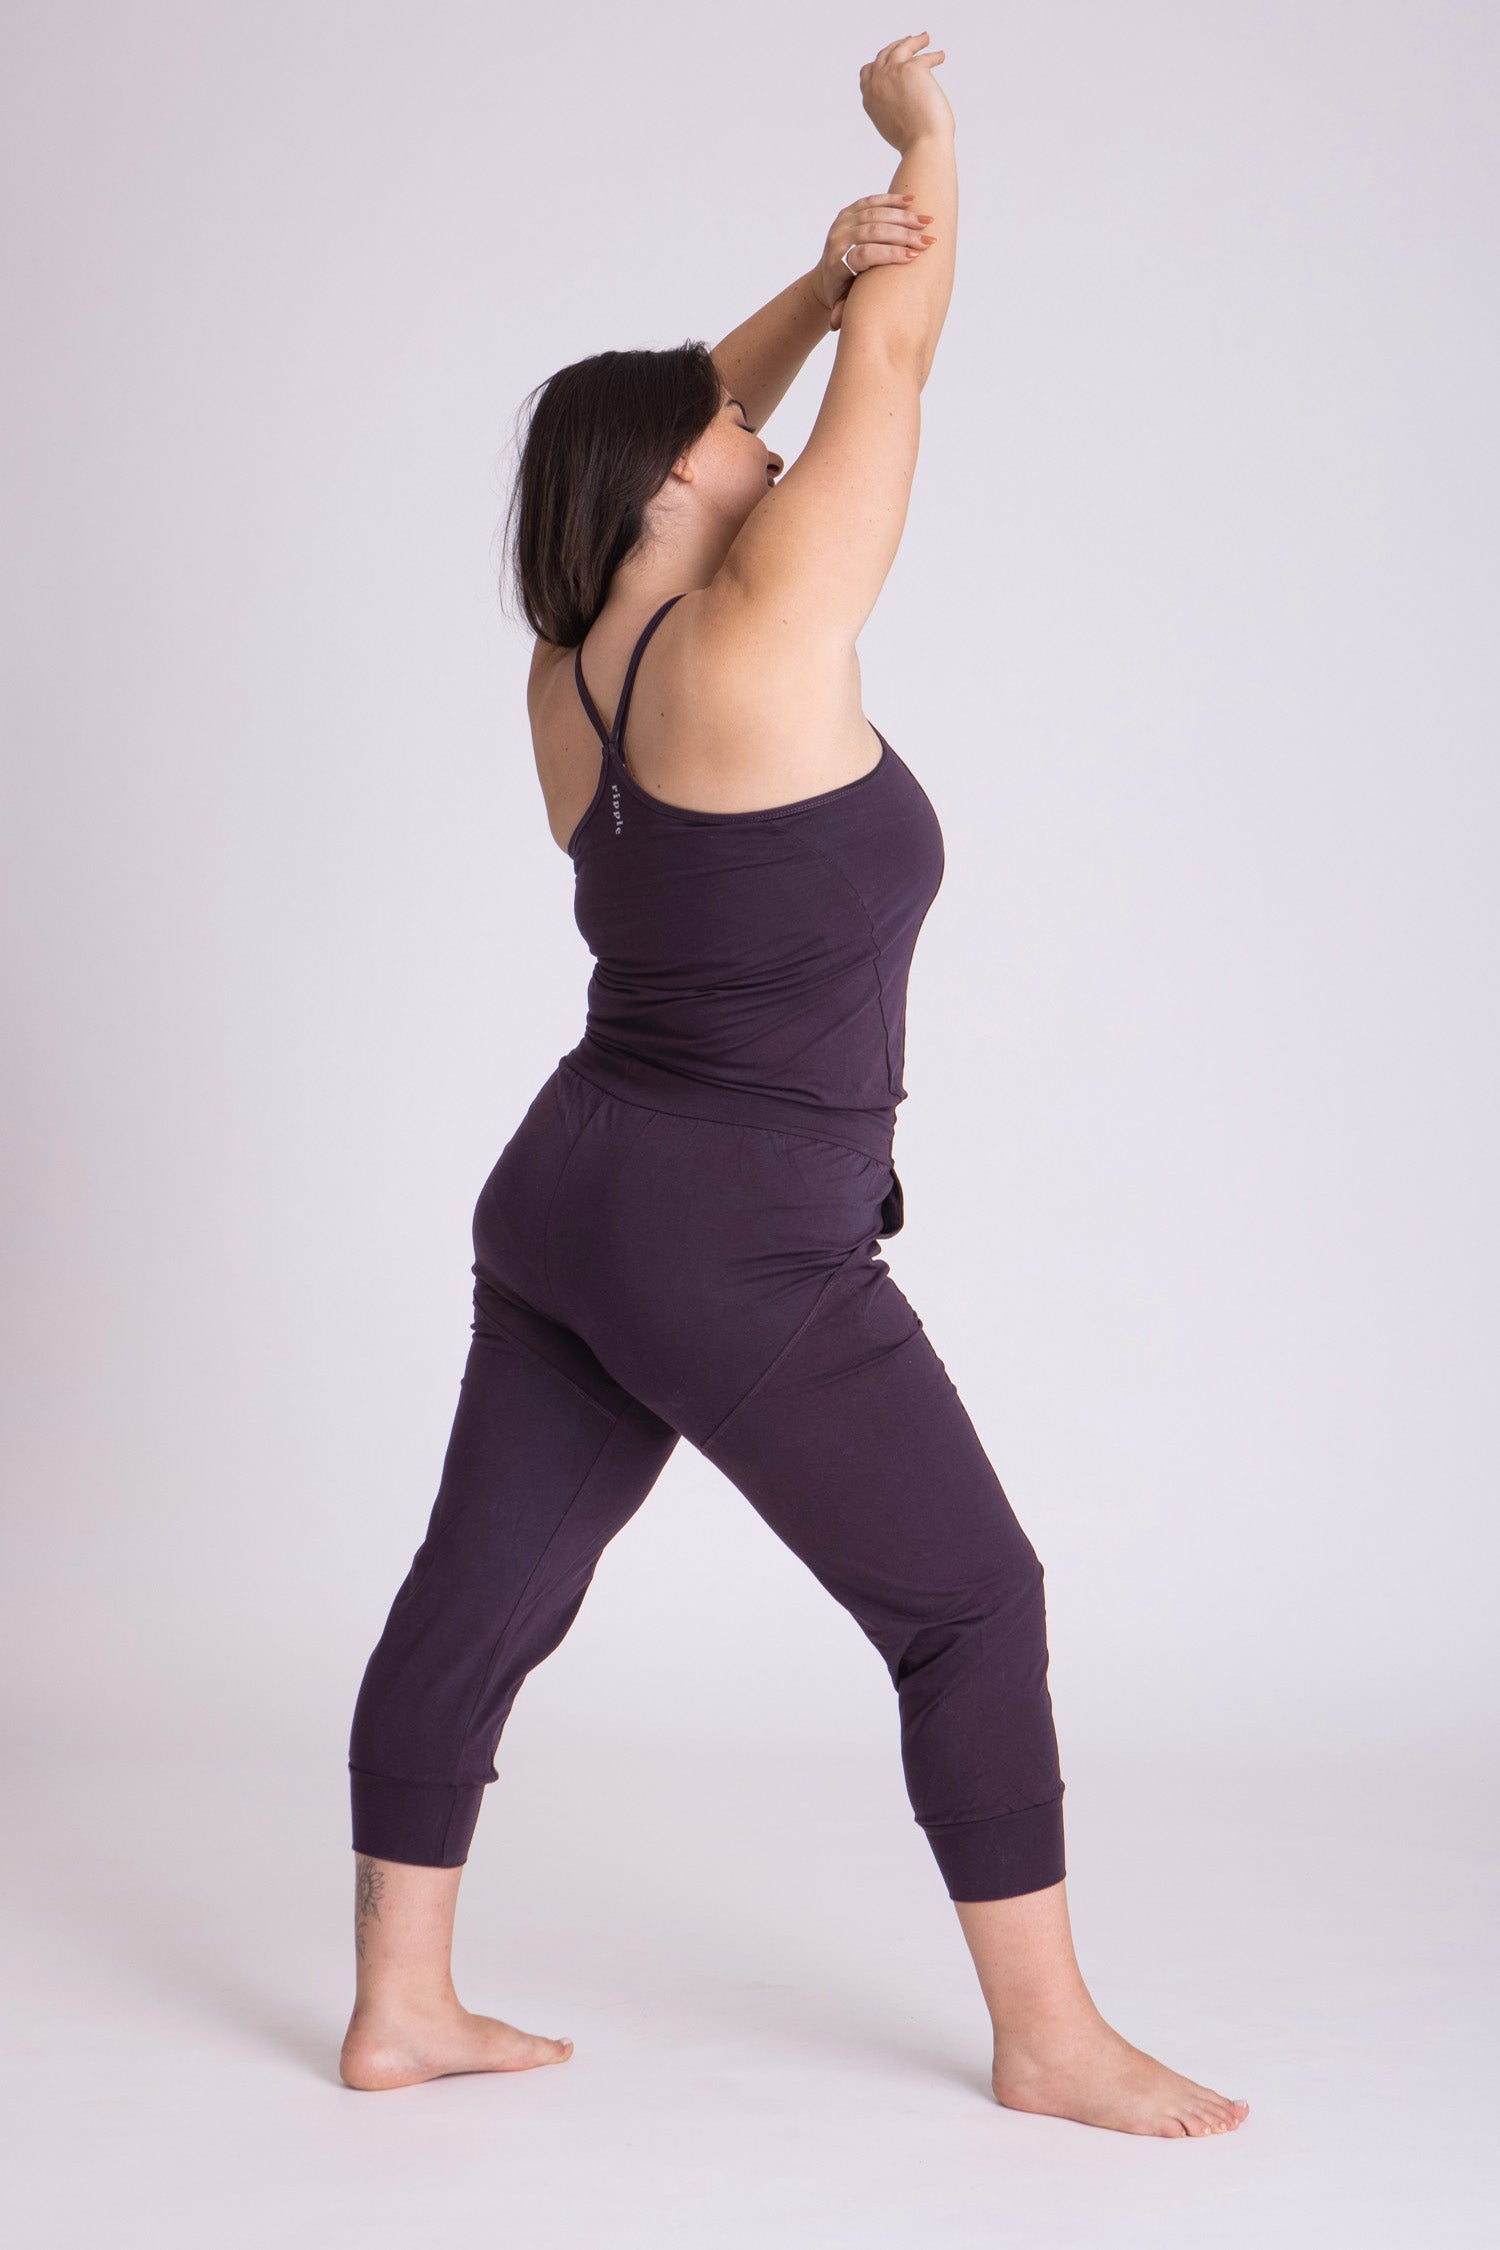 Ripple Yoga Jumpsuit | Yoga jumpsuit, Clothes design, Jumpsuit